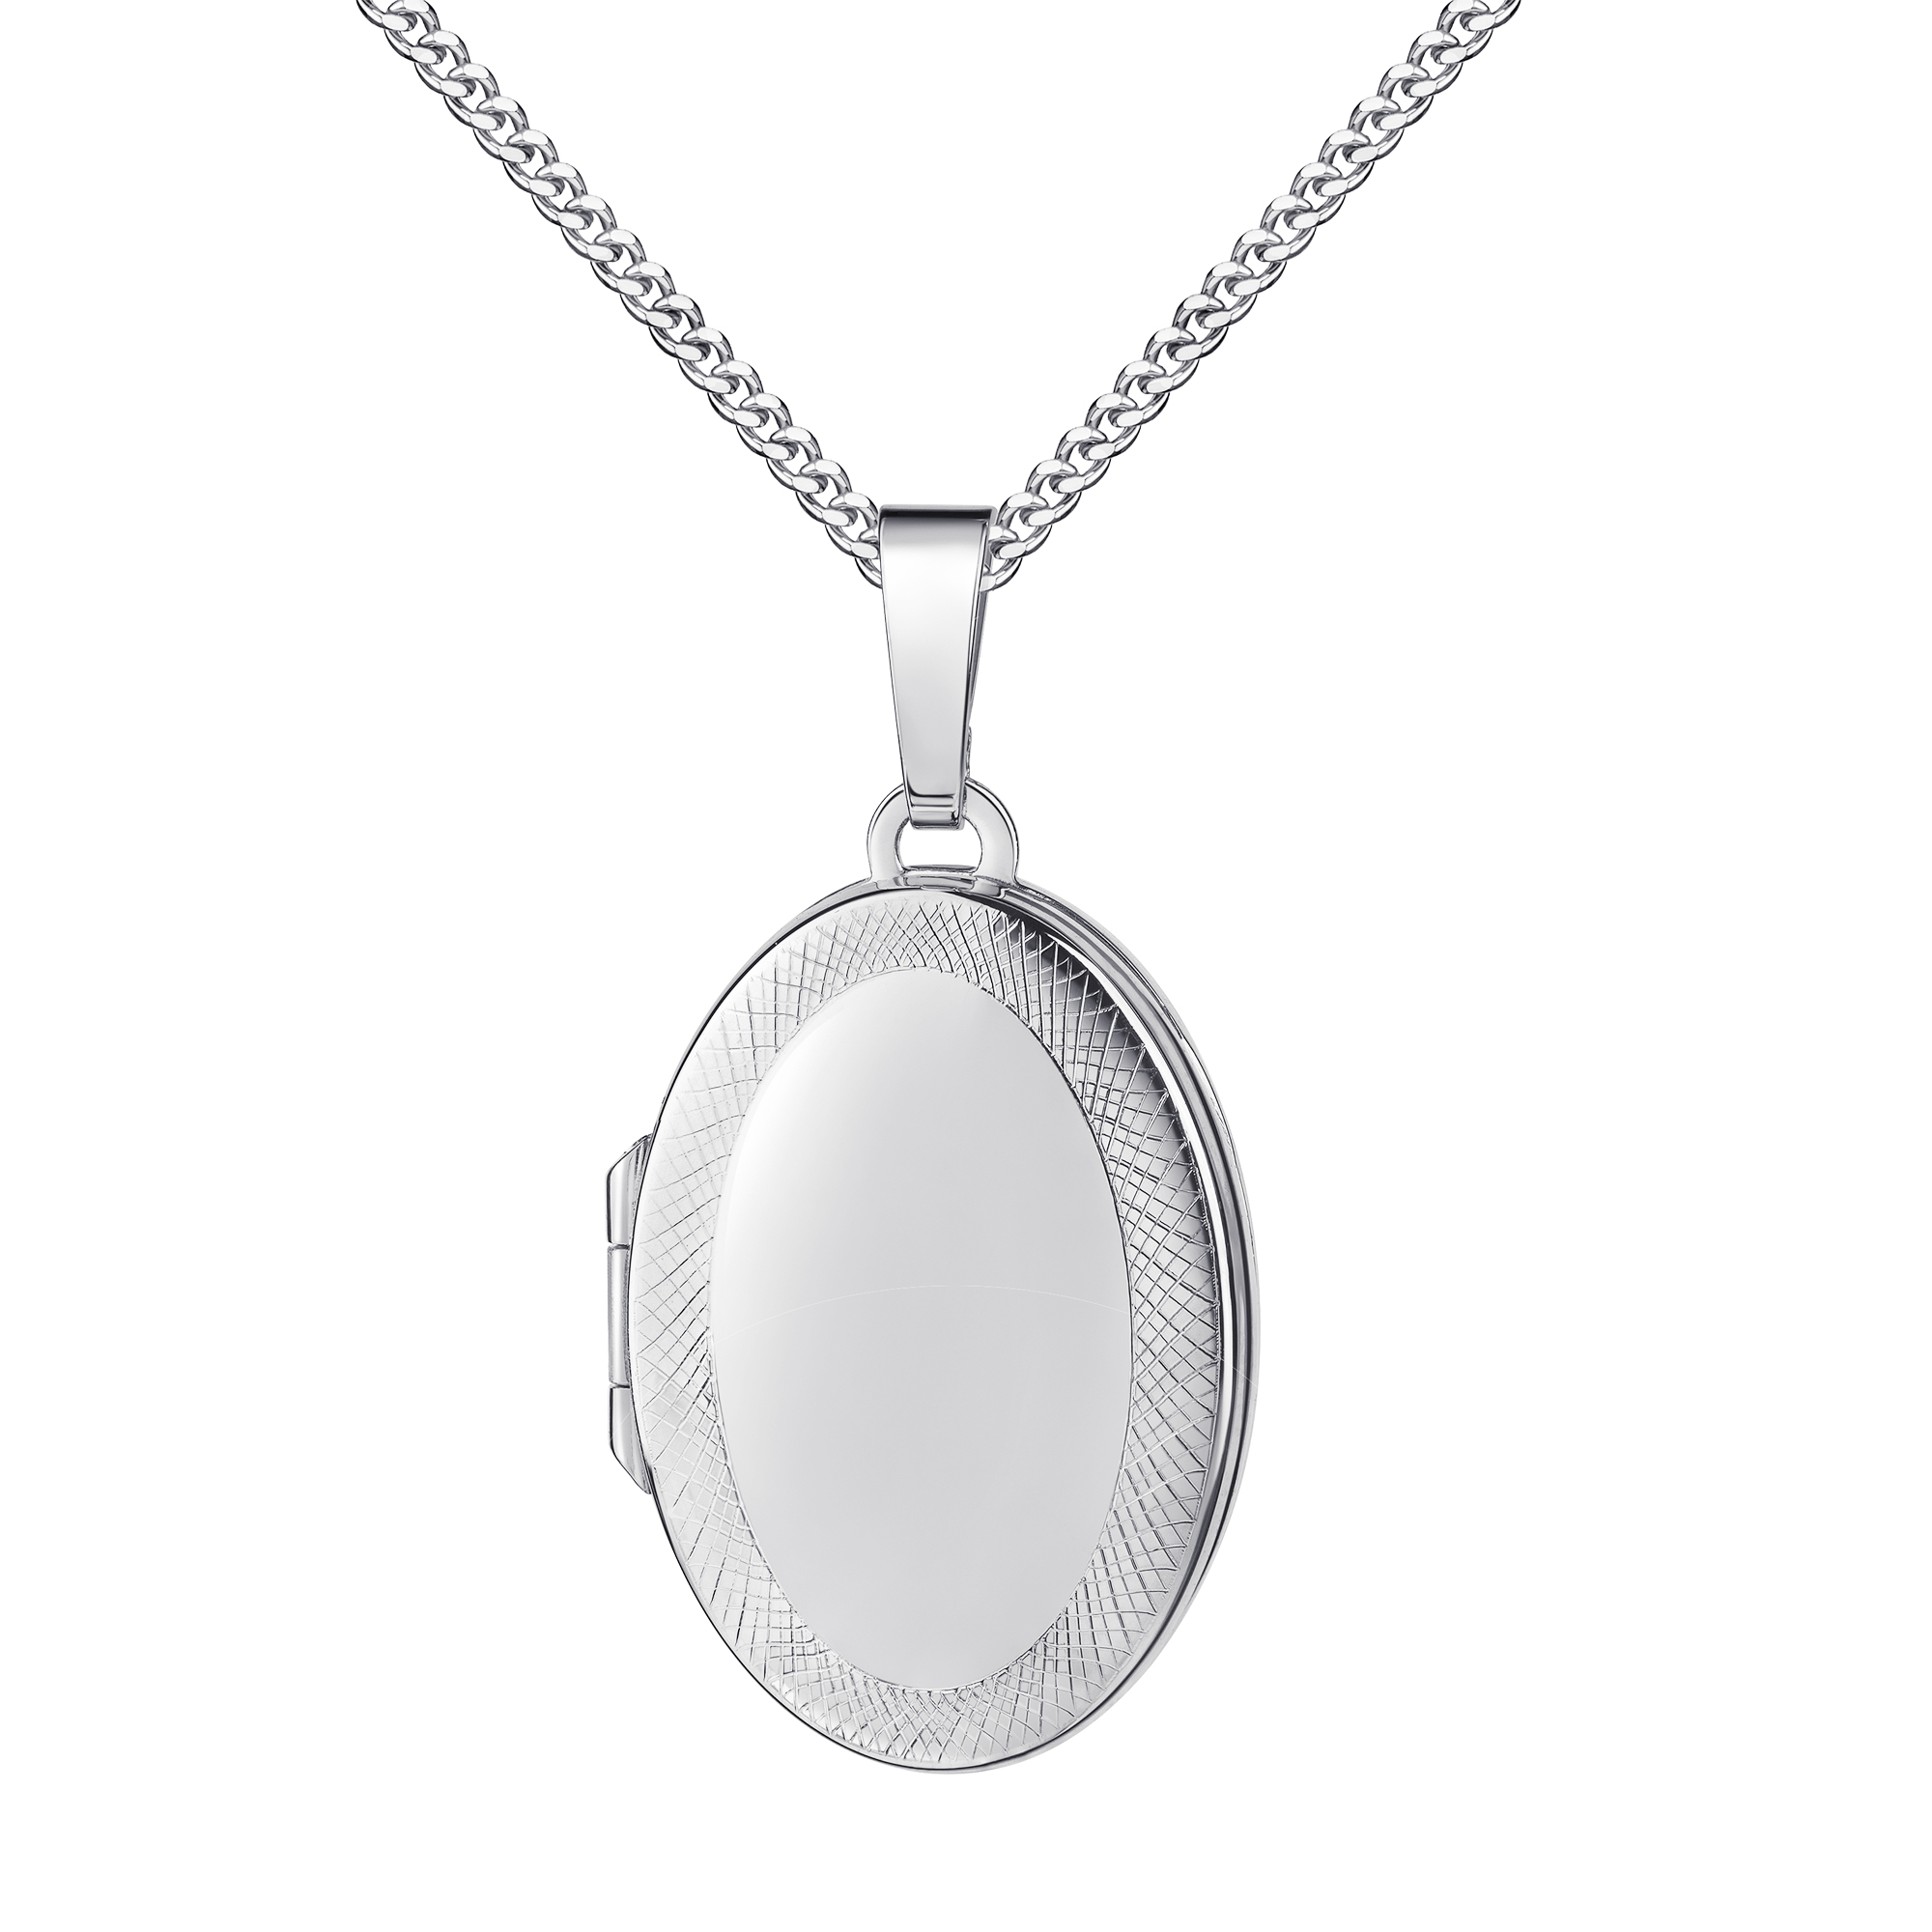 Medaillon 925 Silber ovaler Amulett Anhänger für 2 Bilder Silberamulett und Schmuck-Etui